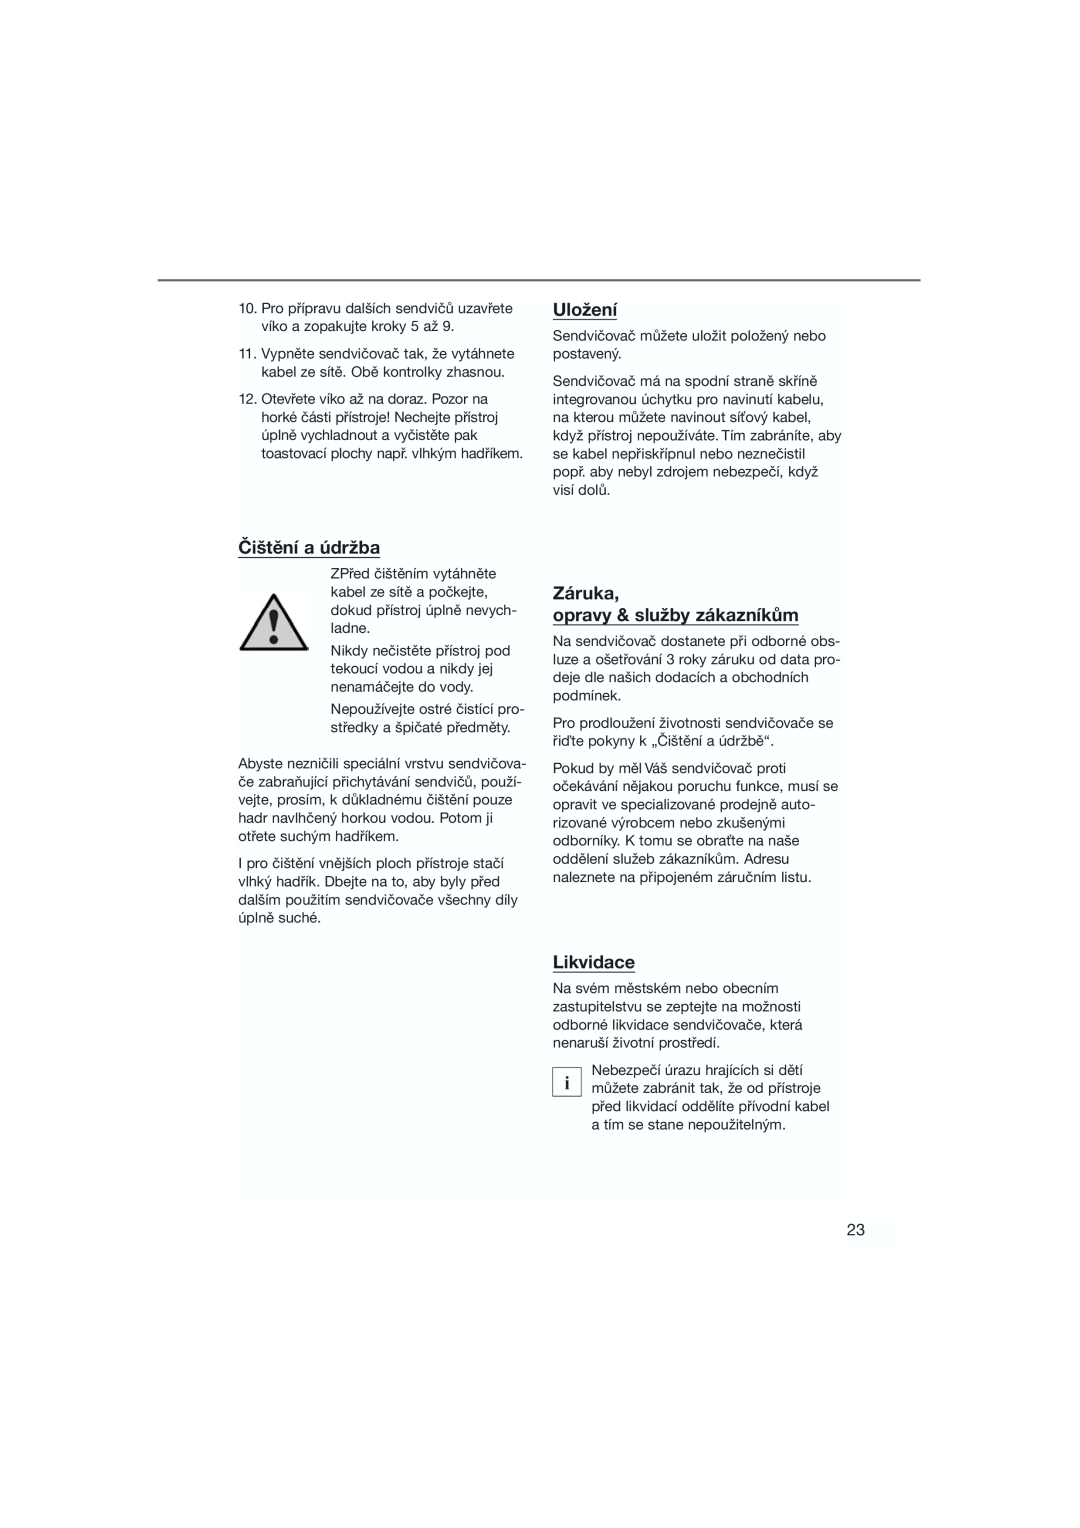 Bifinett KH 1120 manual Uložení, Čištění a údržba, Záruka opravy & služby zákazníkům, Likvidace 